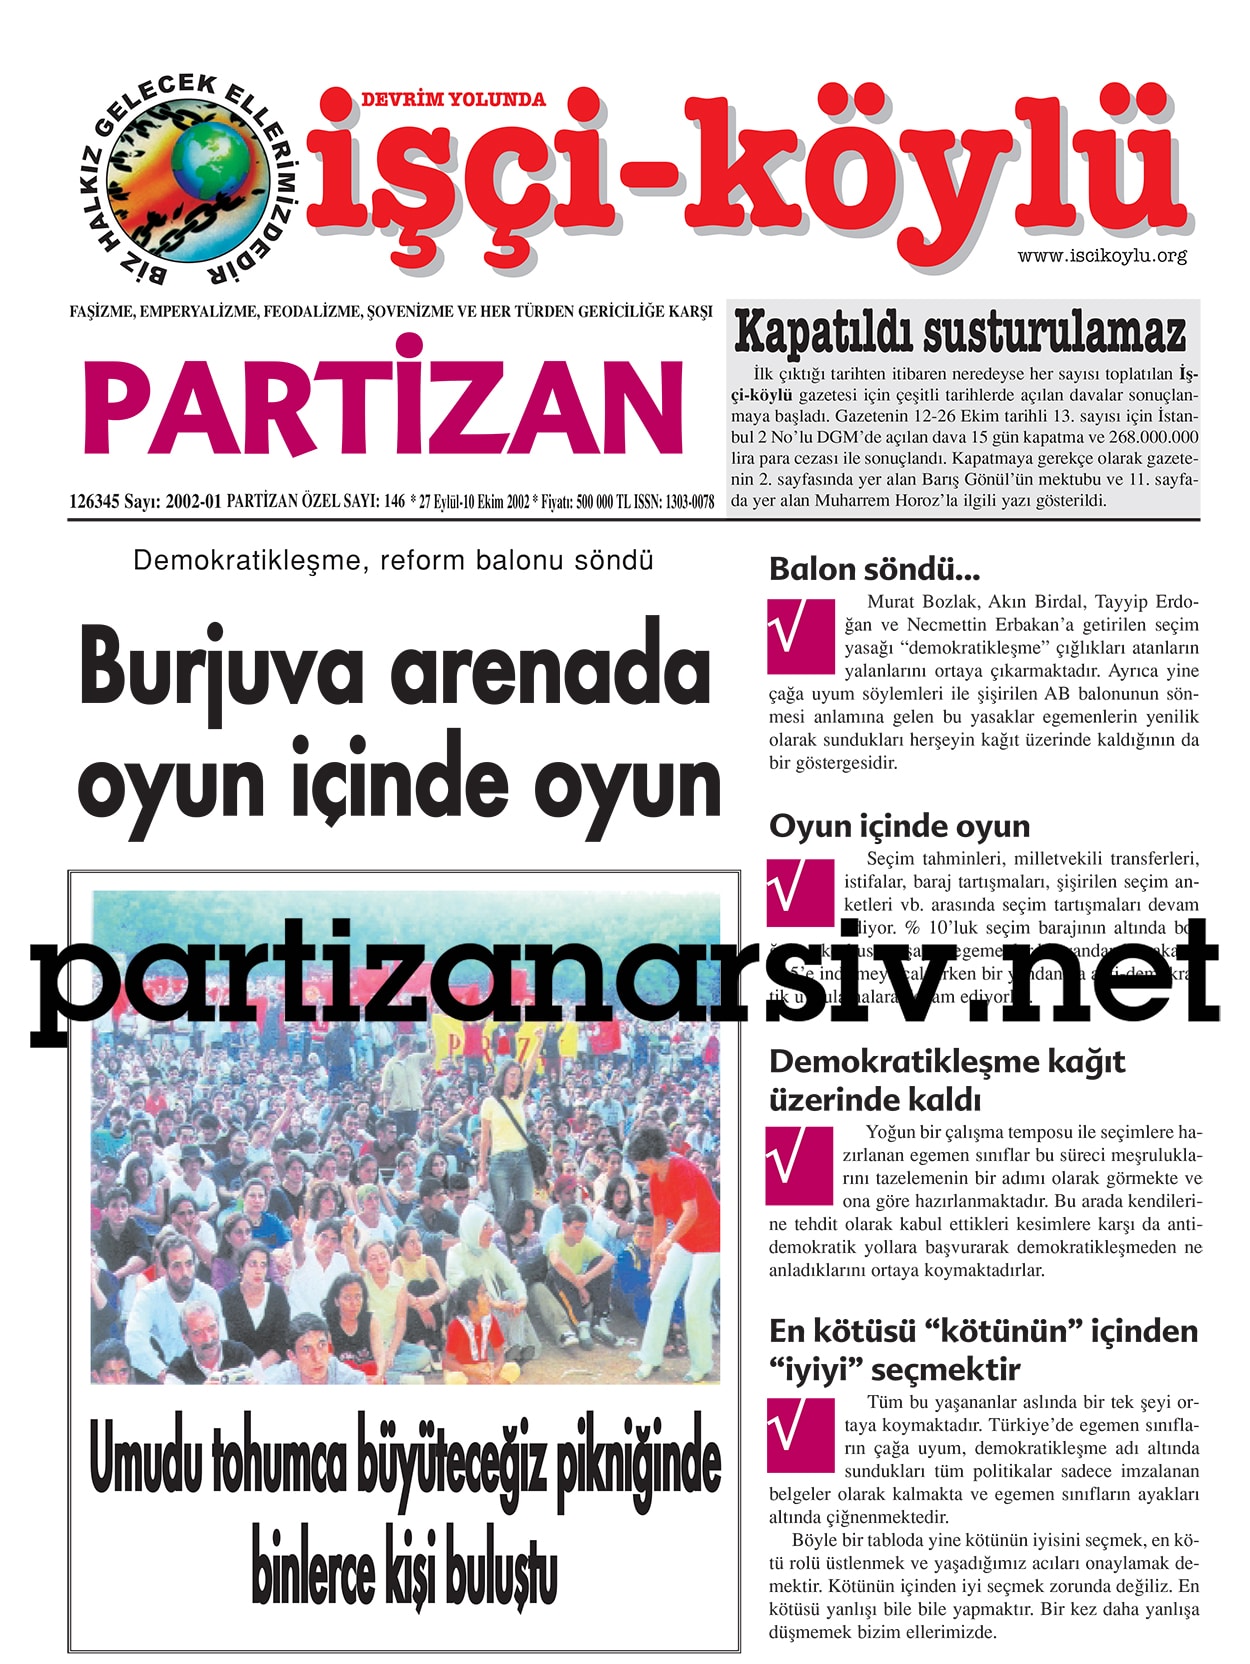 Partizan Özel Sayı 38